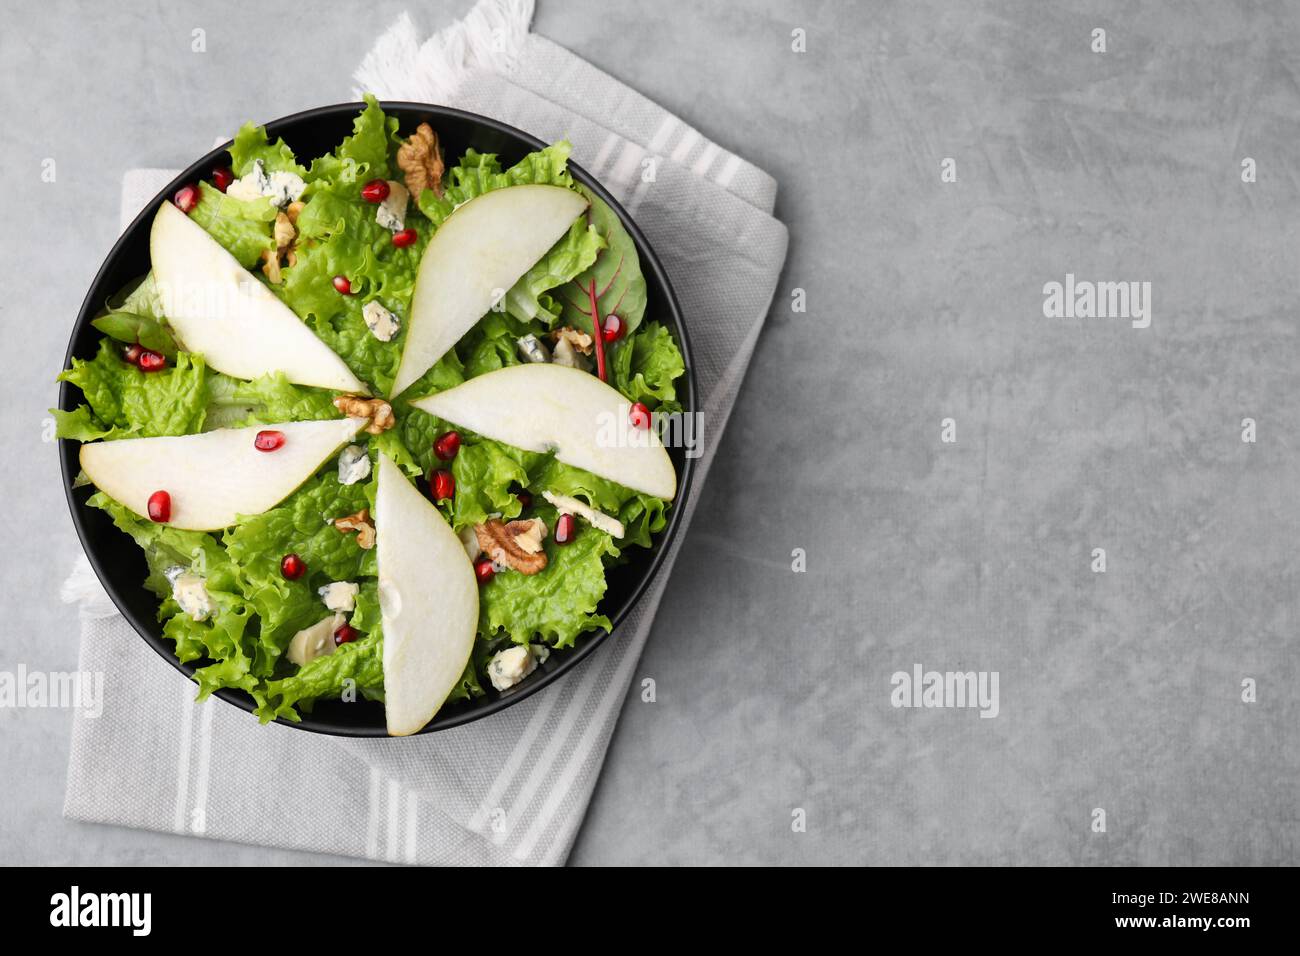 Délicieuse salade de poires dans un bol sur une table texturée grise, vue de dessus. Espace pour le texte Banque D'Images